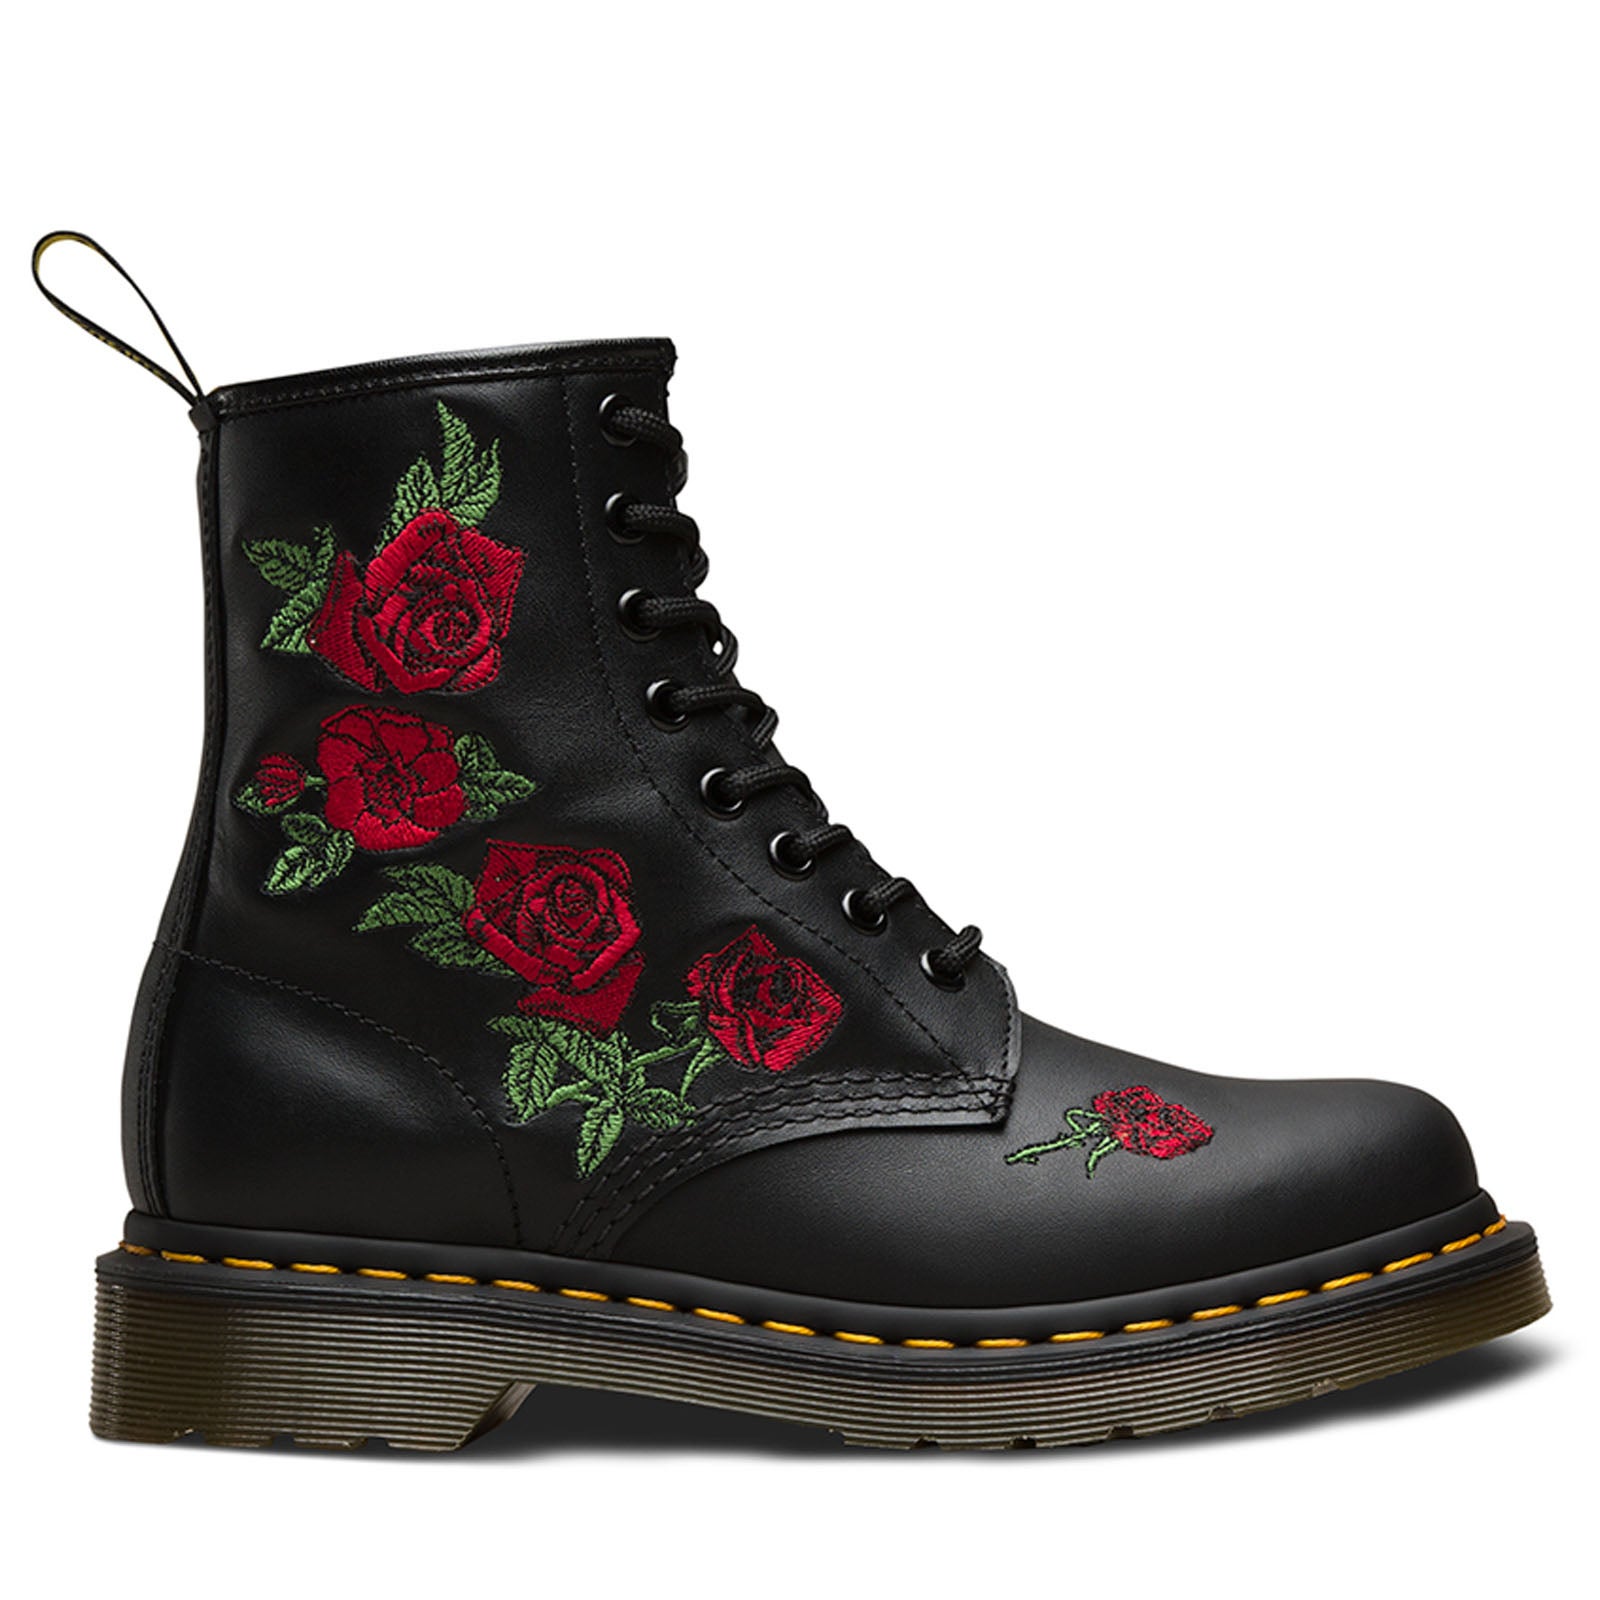 Dr. Martens 1460 Vonda Boots 8 Eye Floral Women's Shoes - Black | Buy ...